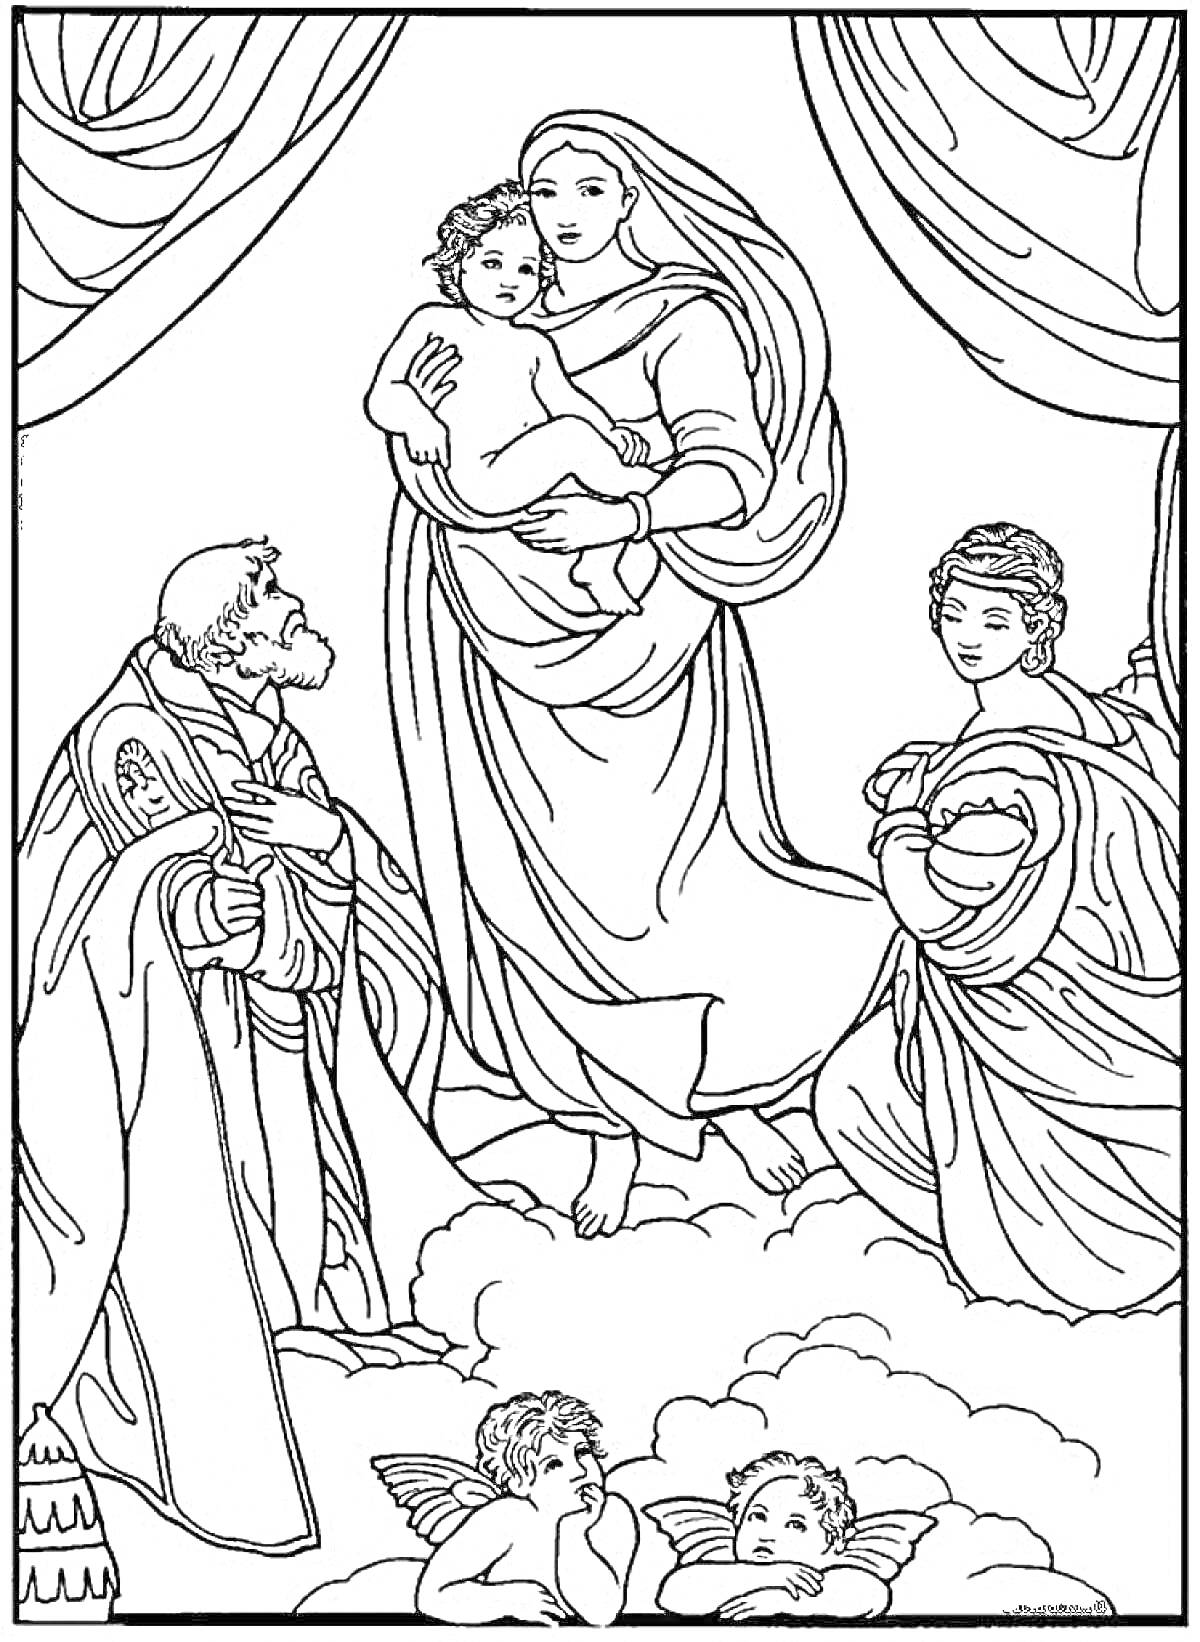 Святой с ребёнком на руках, два святых рядом, ангелы на облаках